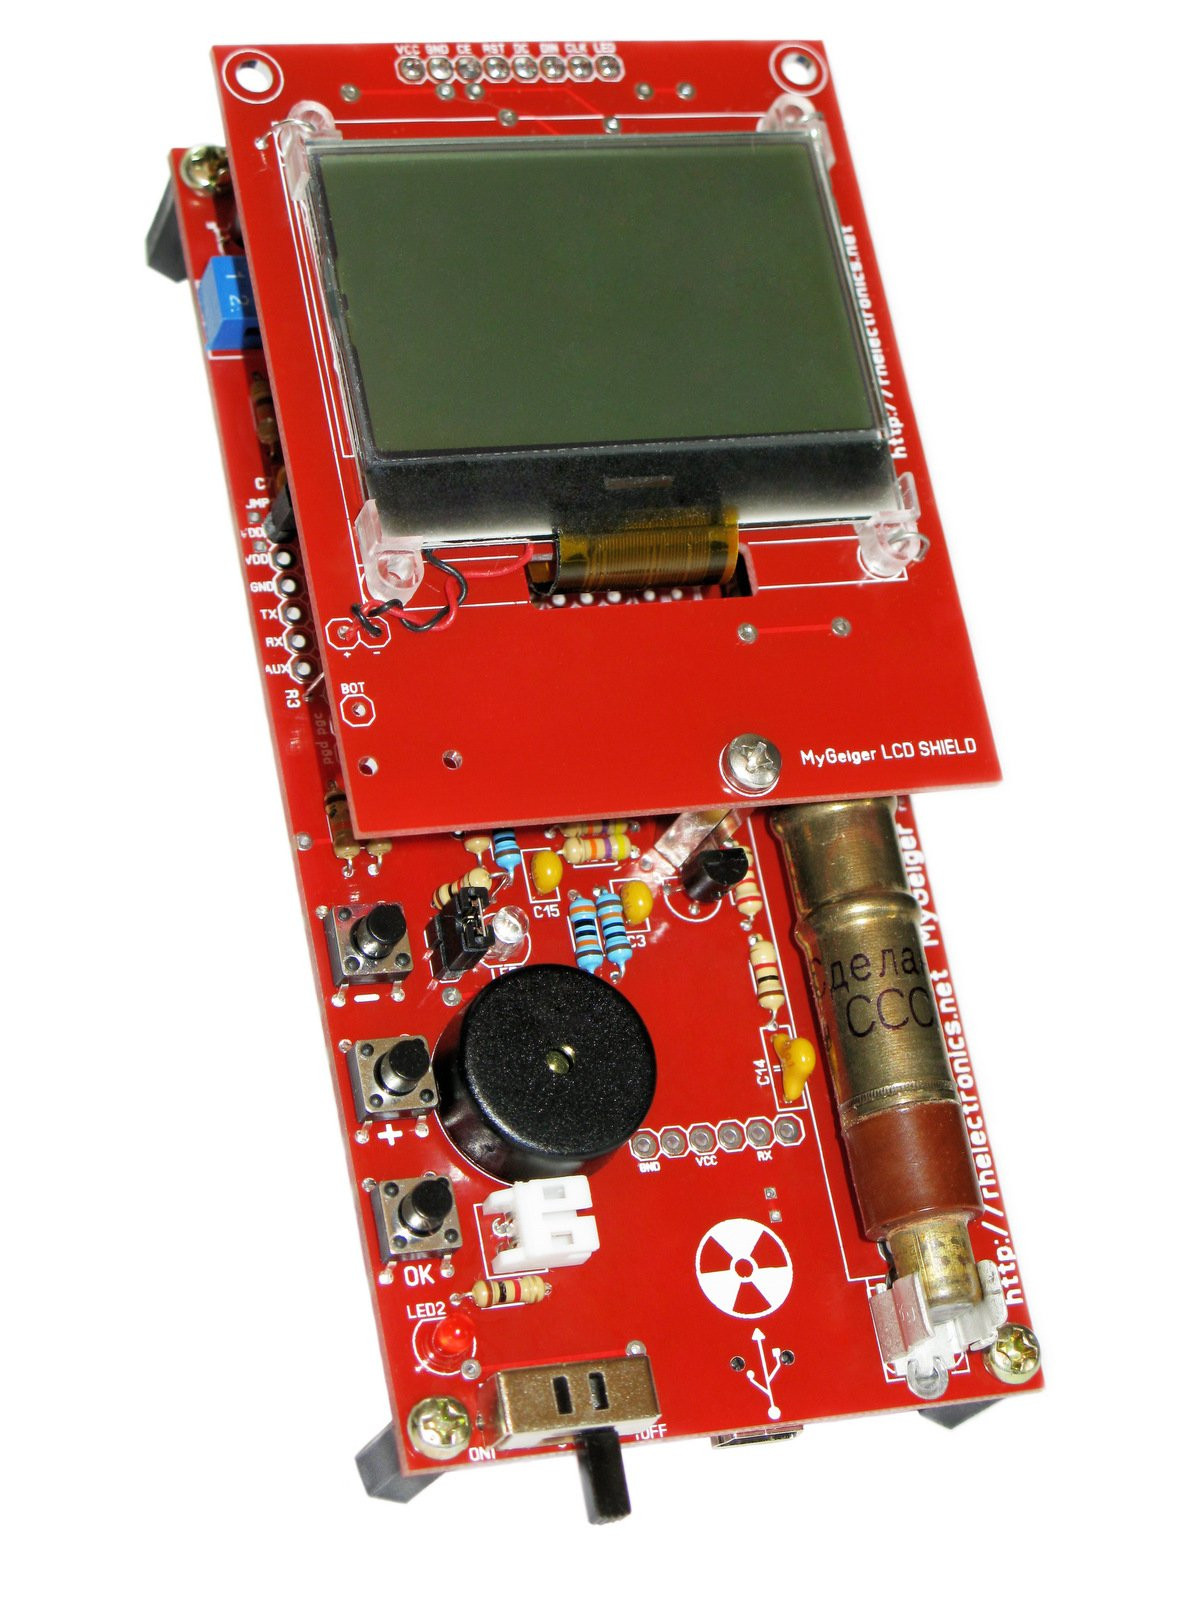 DIY Geiger Counter Kit
 ASSEMBLED MyGeiger ver 2 DIY Geiger Counter Kit from